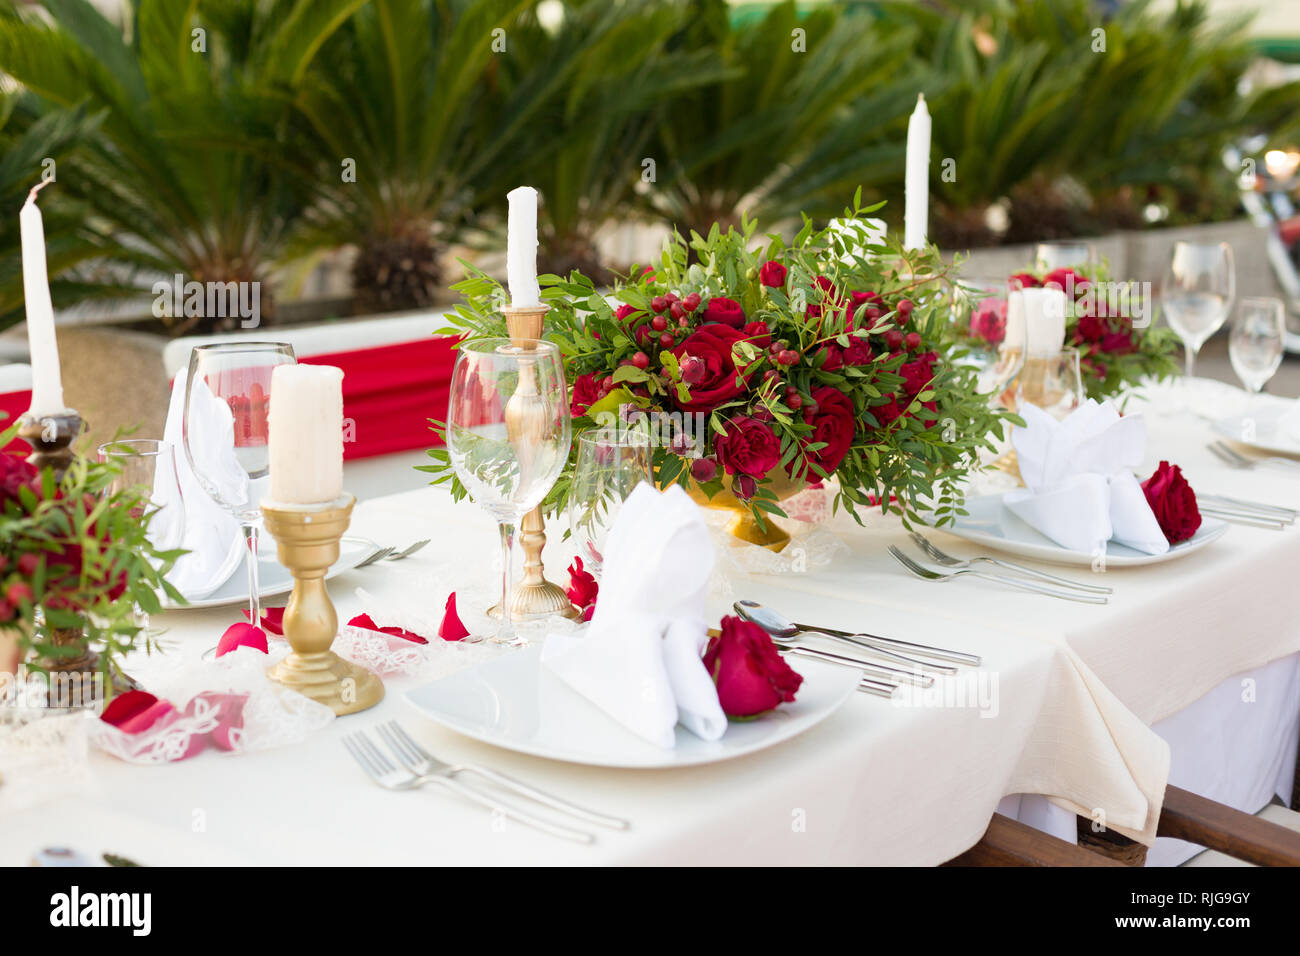 Tabelle für eine Hochzeit Abendessen mit roten Blumen und Grün dekoriert Stockfoto